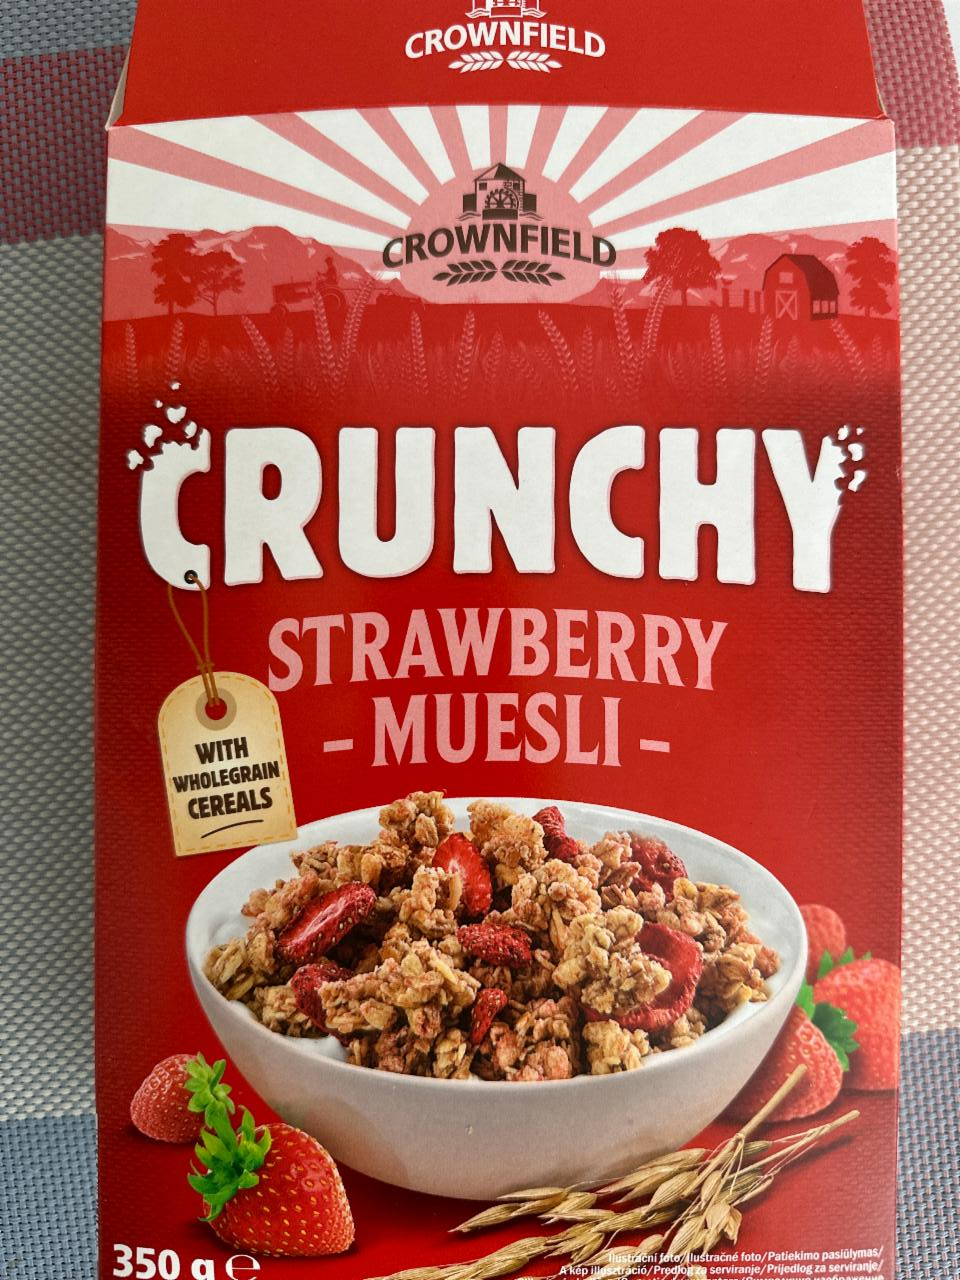 Фото - Мюсли хрустящие с клубникой Crunchy Strawberry Muesli Crownfield